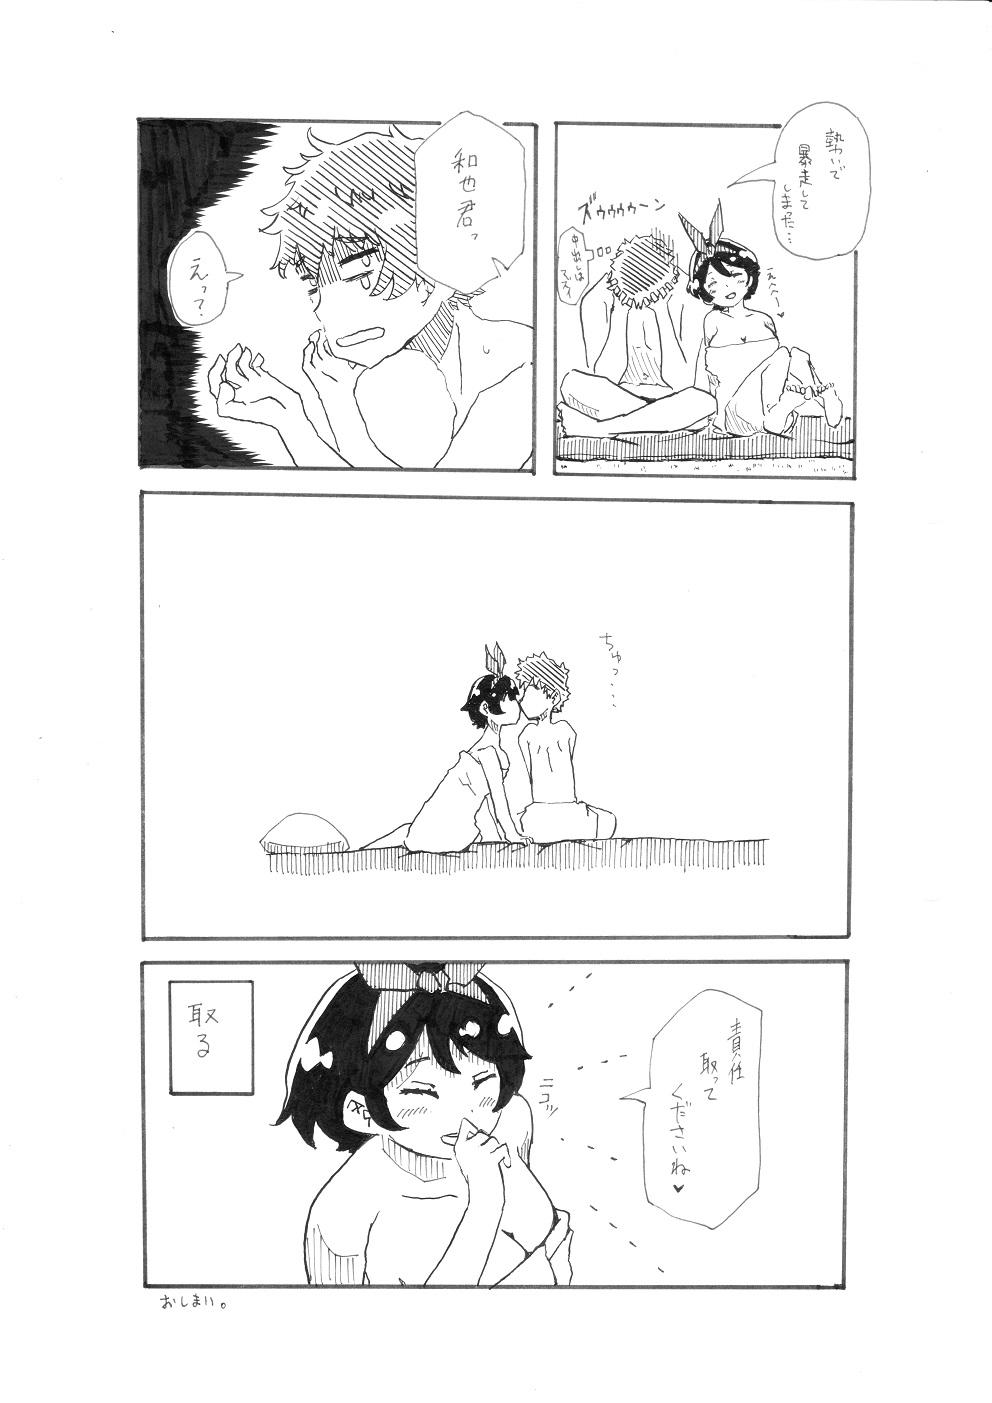 [Pixiv] ユッキーさん | yuckey nekoinu (86798363) [るかちゃんとエッチするだけの漫画] | Rent A Girlfriend 14